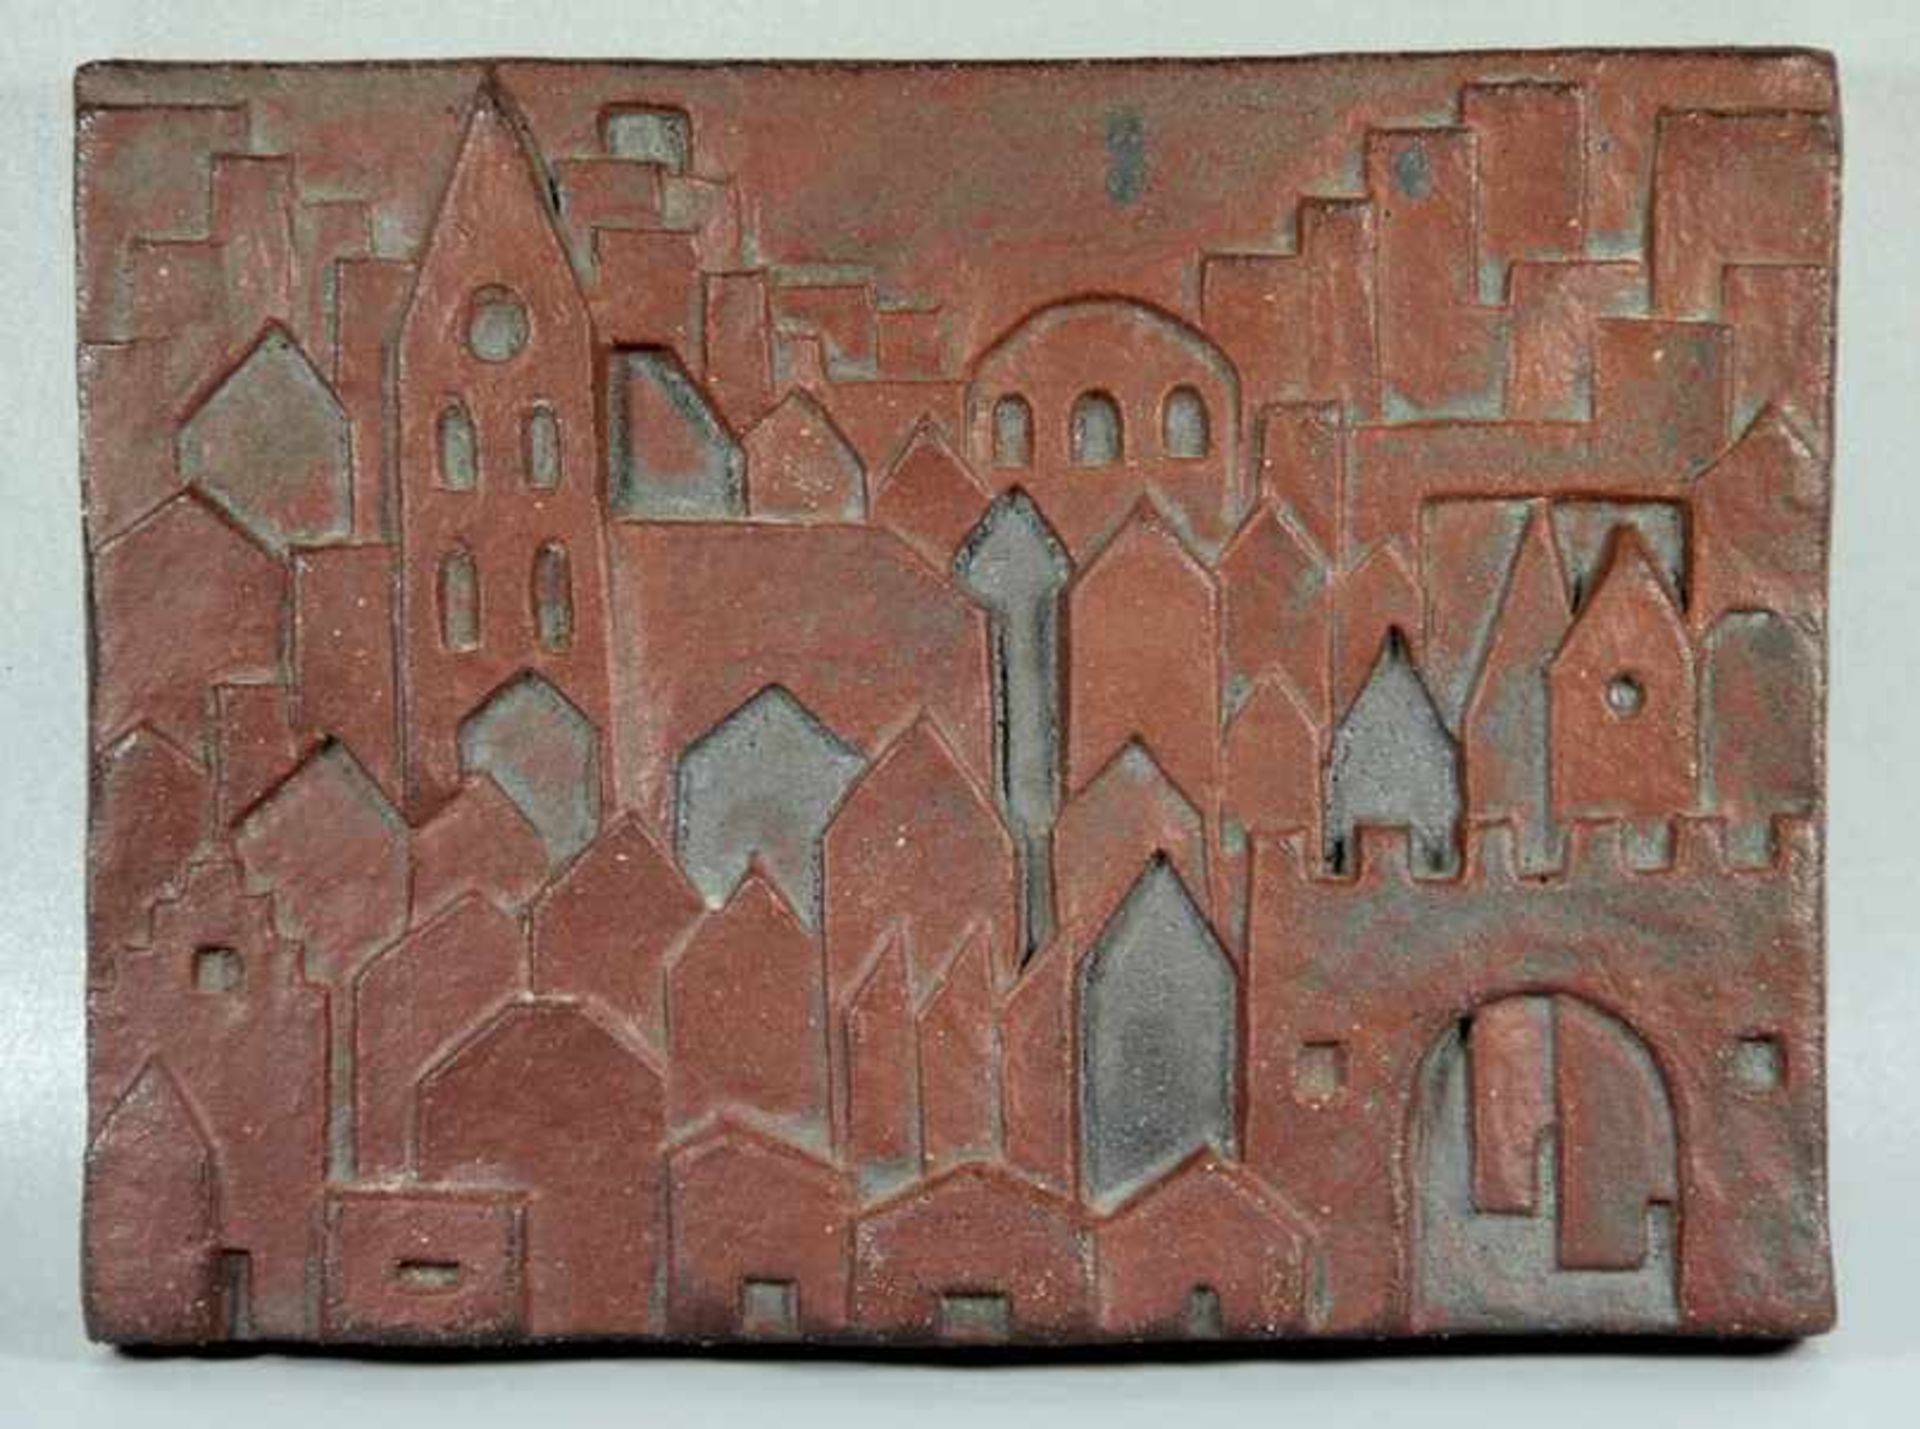 Liebenthron, Gerhard1925-2005, Relieftafel Keramik, Häuser, Türme und Zinnen, verso geritztes